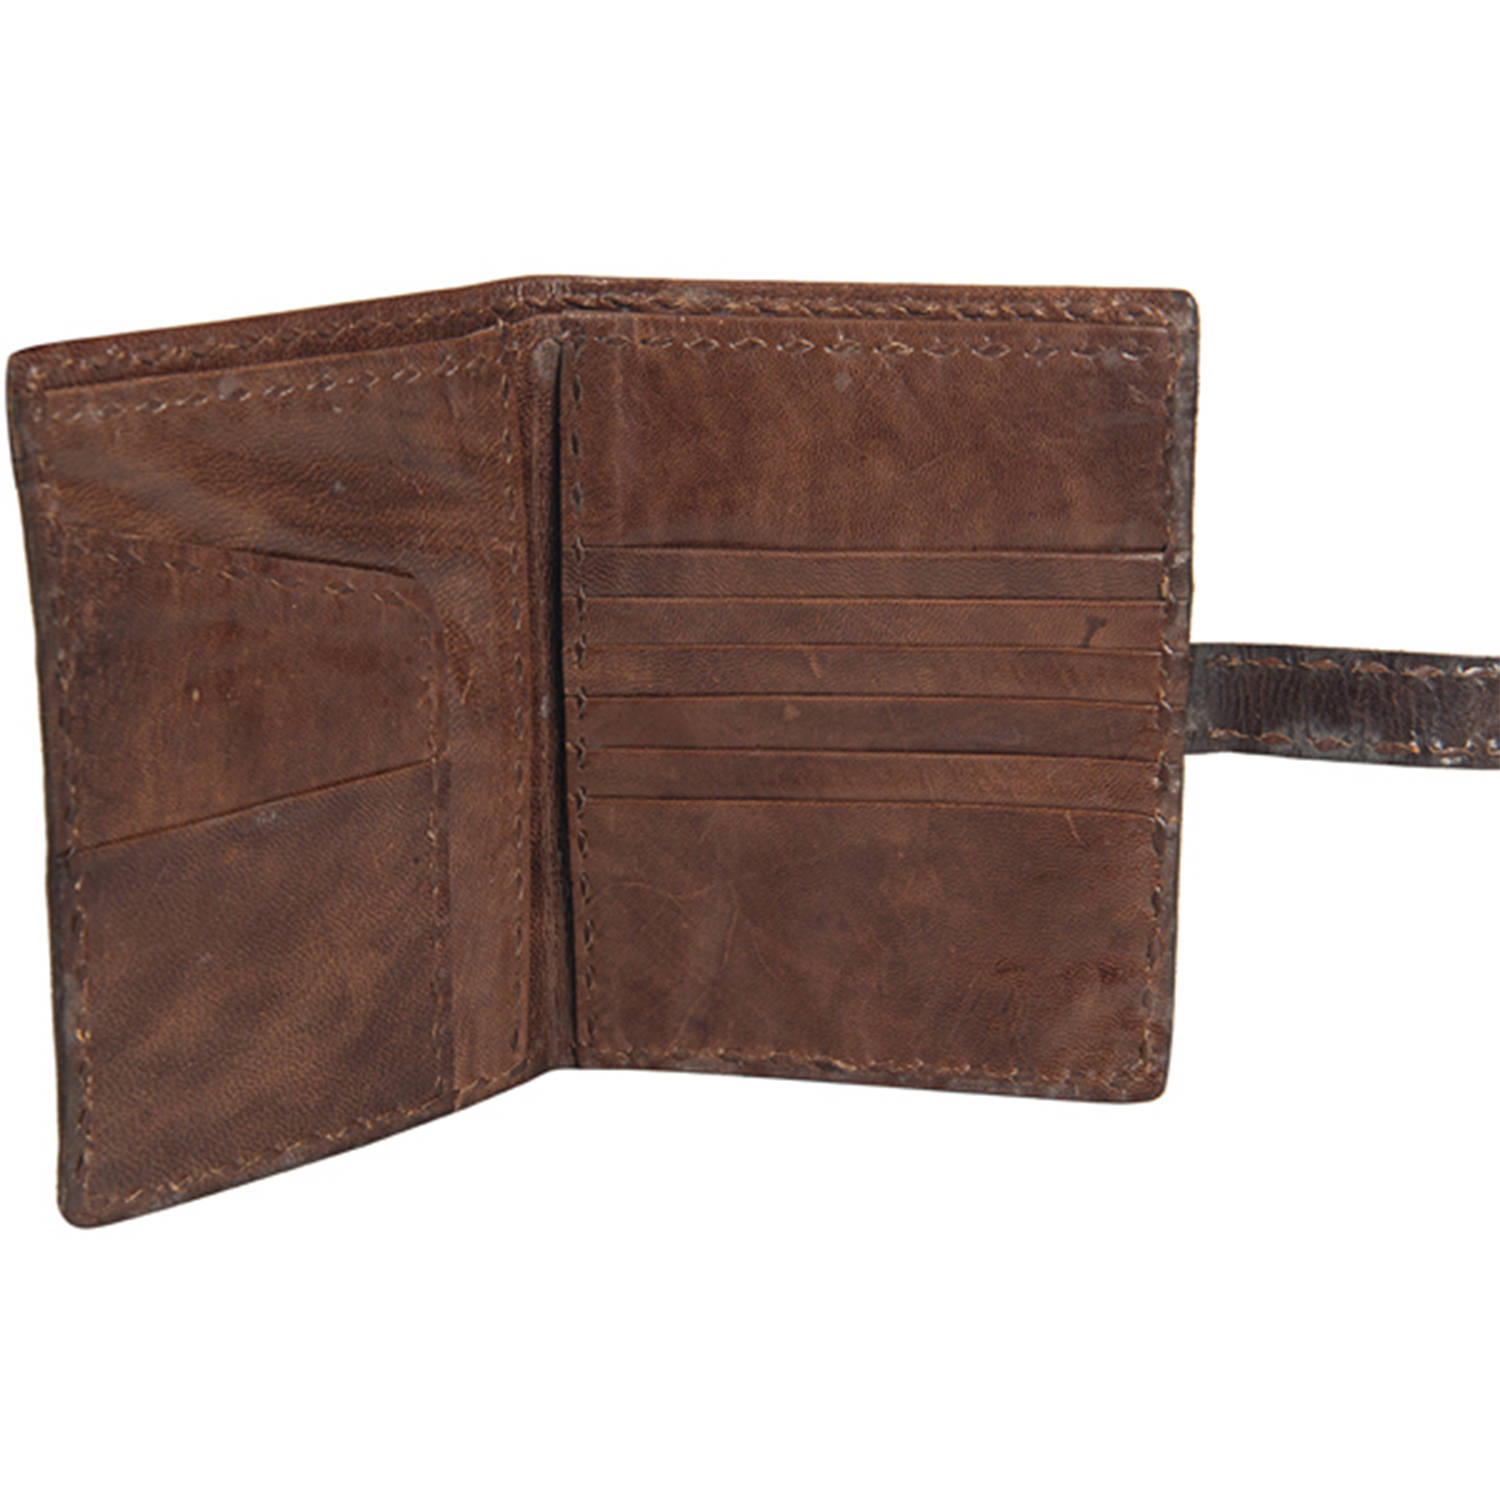 Dakota Purse - Buffalo Leather - Made in USA | Buffalo Billfold Company